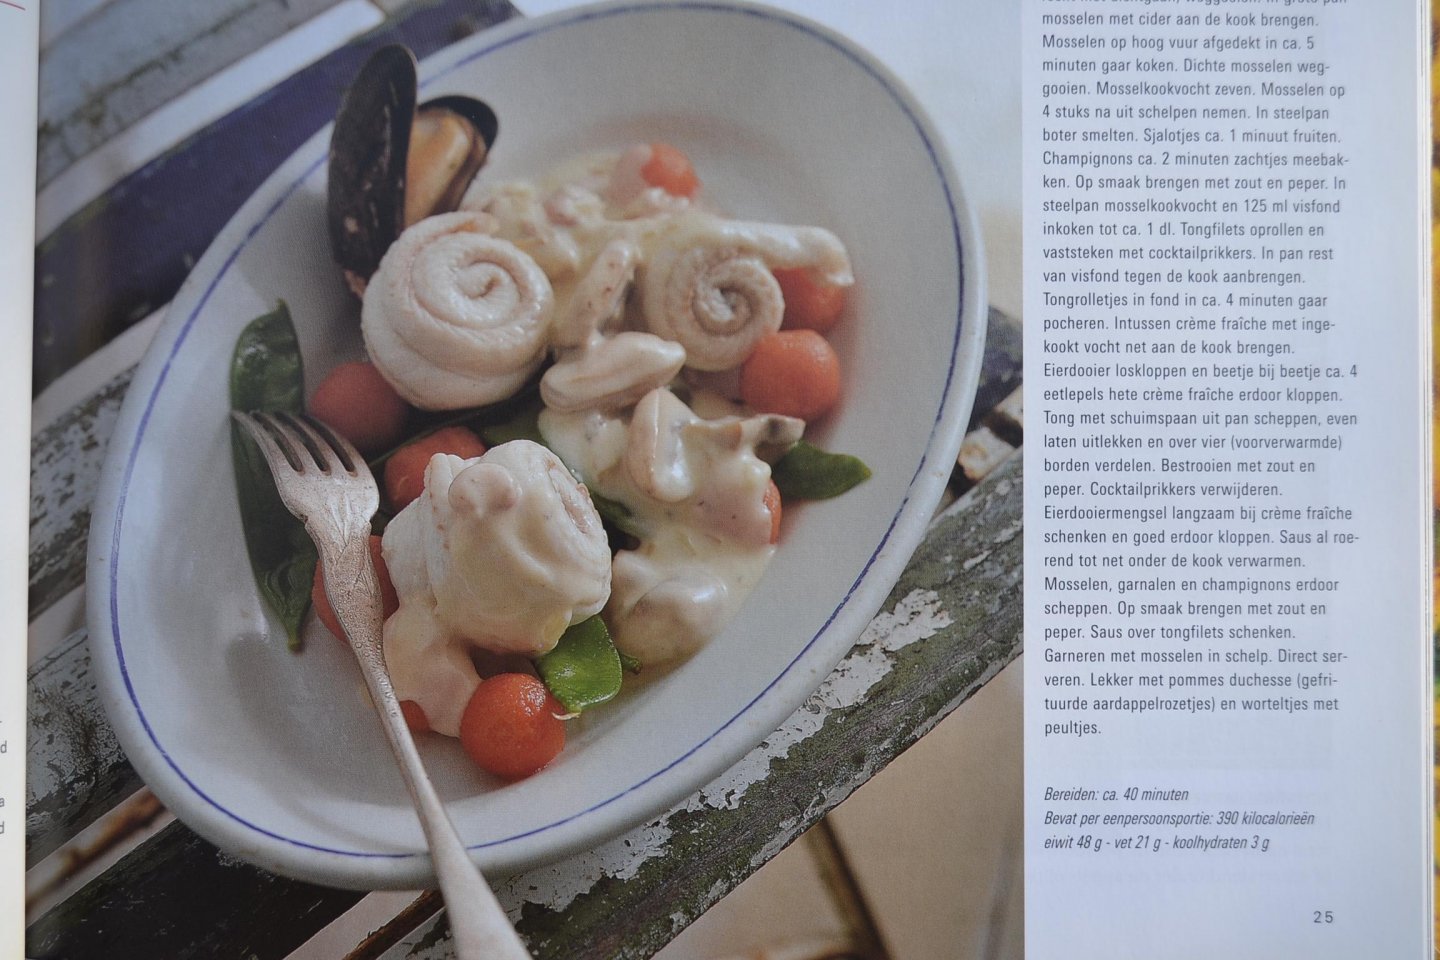 Blankenspoor, Reijer - hoofdredactie - Frankrijk - een culinaire ontdekkingsreis